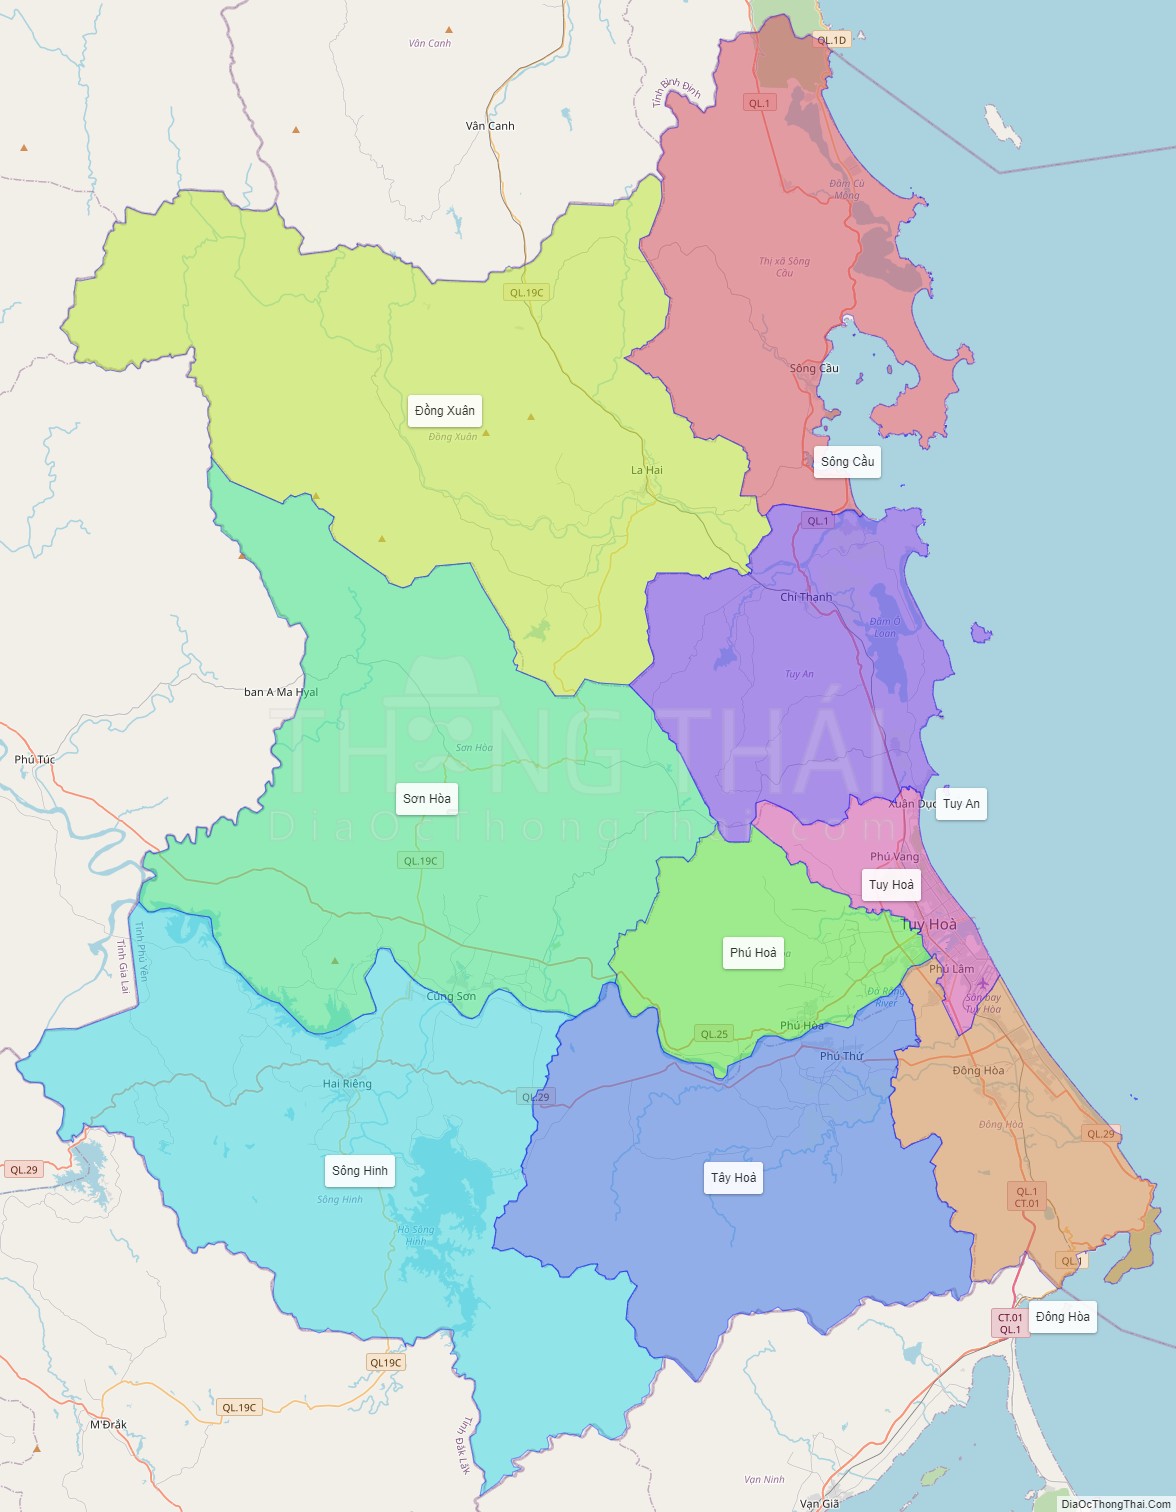 Bản đồ hành chính tỉnh Phú Yên